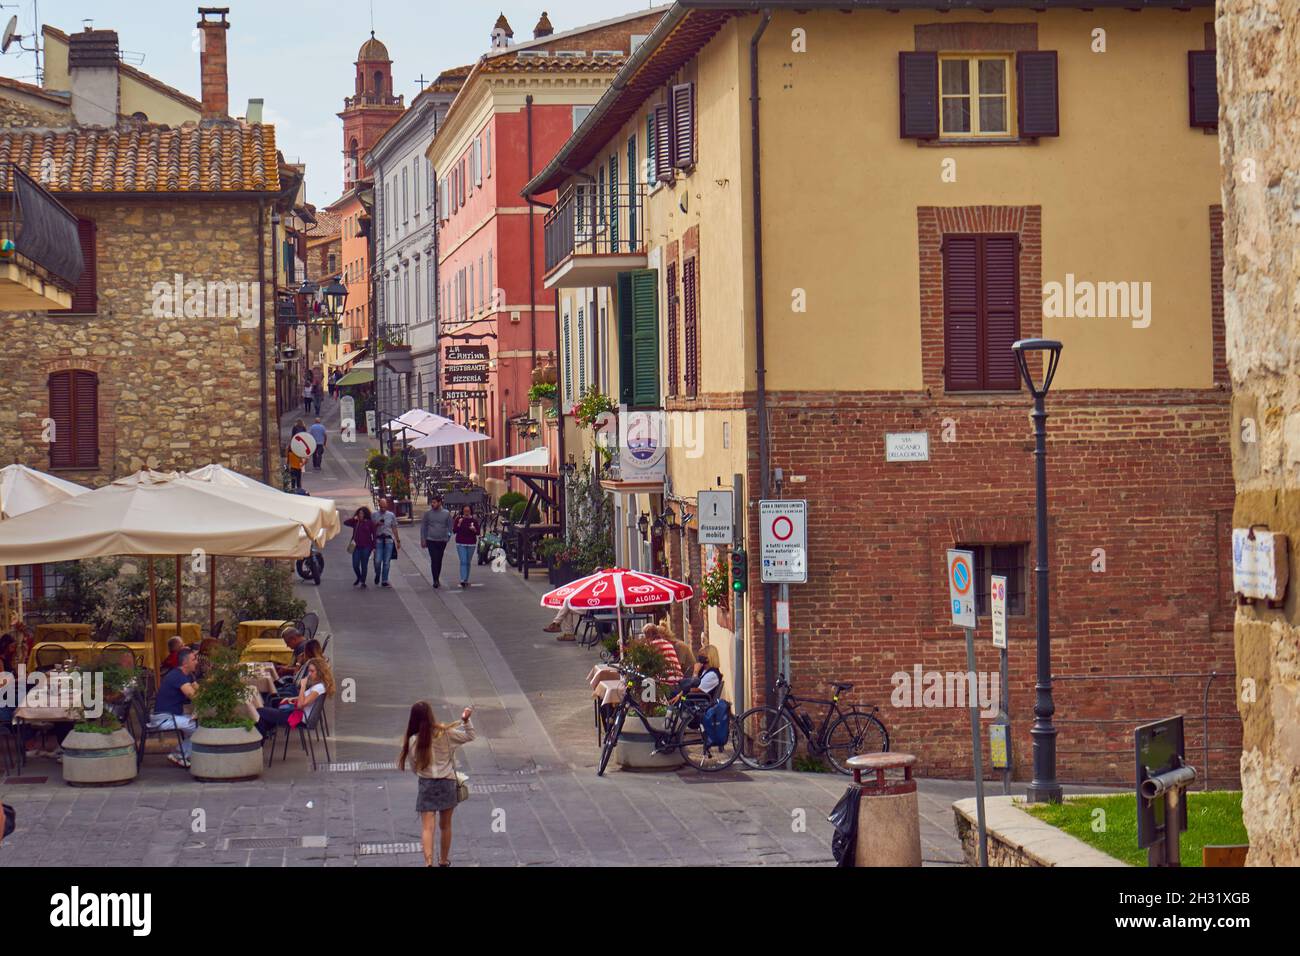 Altstadt, Straße mit Restaurants und Geschäften, Castiglione del Lago, Umbrien, Italien Stock Photo